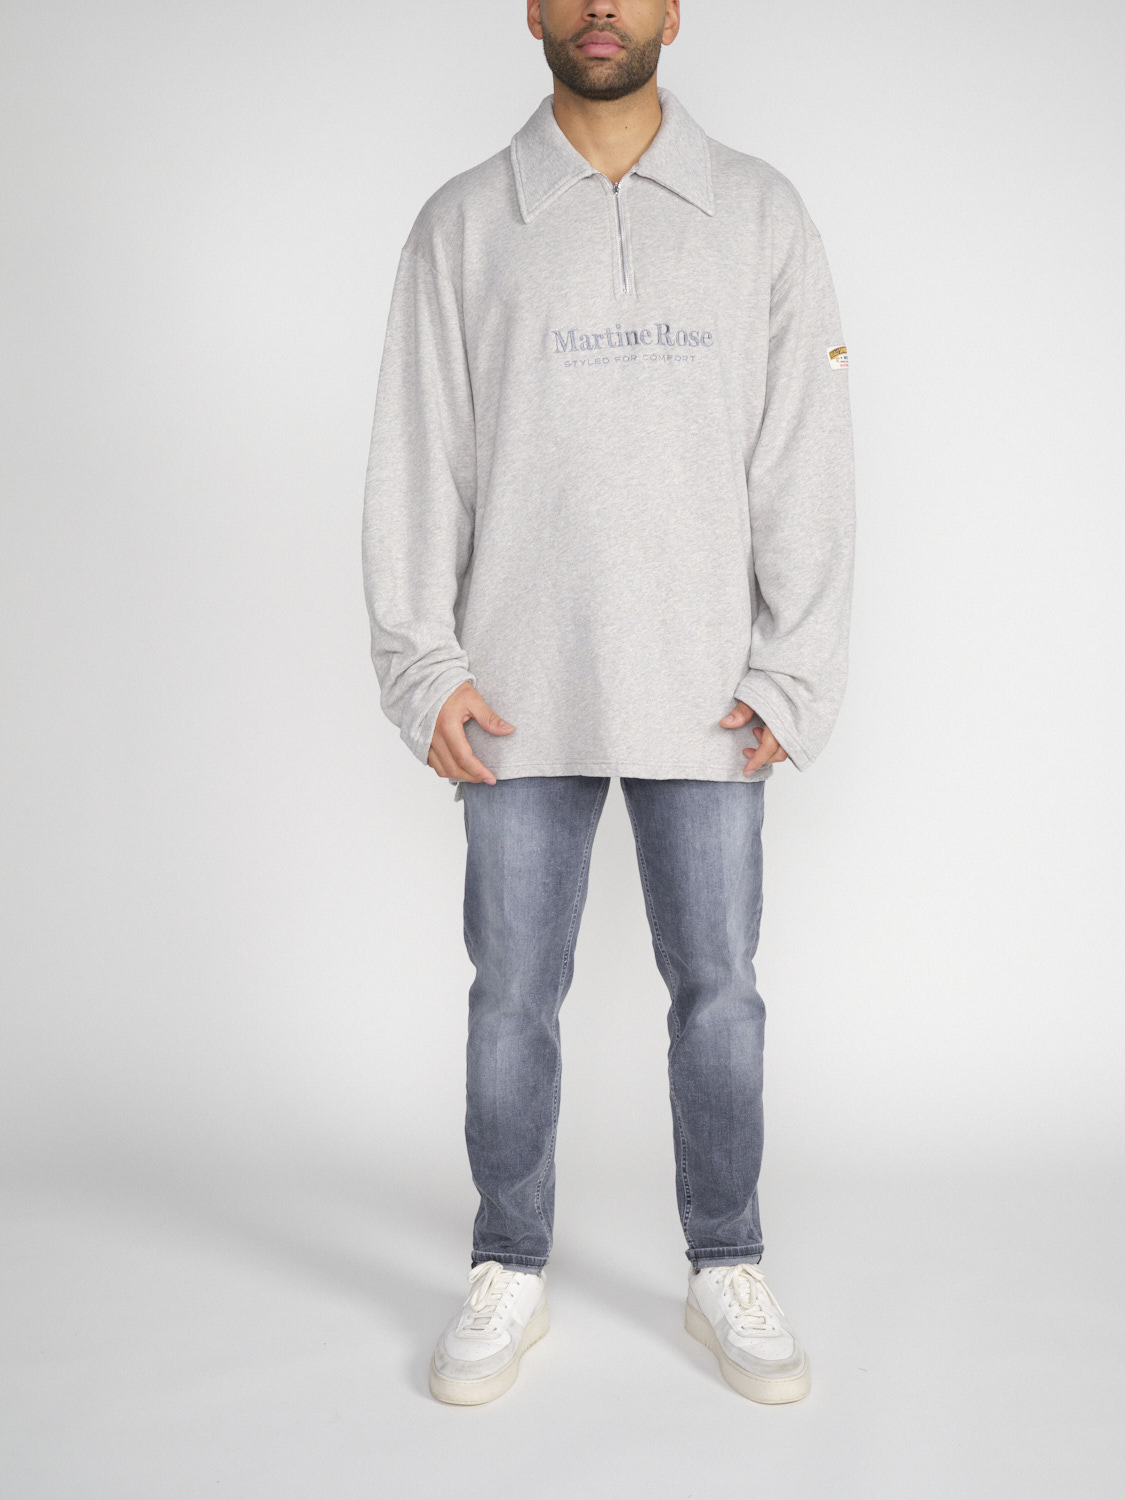 Martine Rose Zip Up – Oversized Sweatshirt with Zipper   grey XS